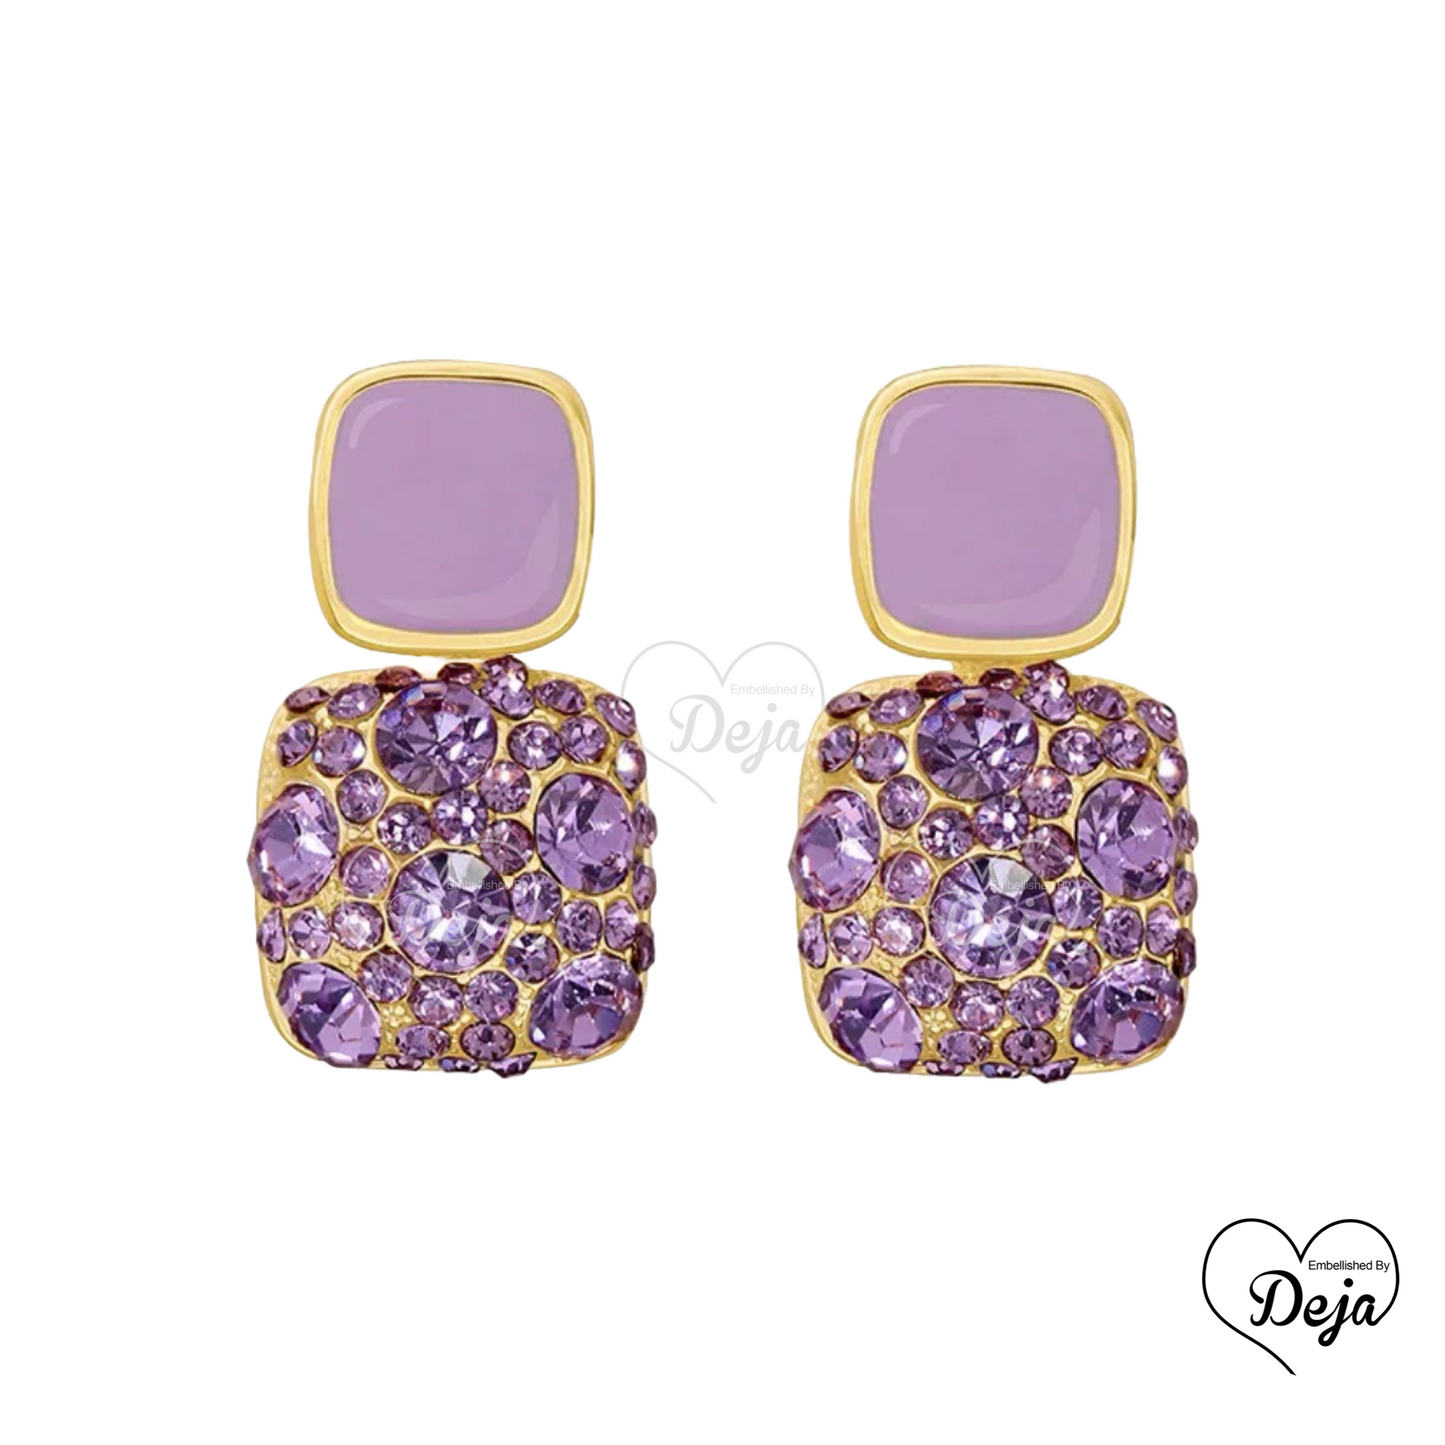 Crystal Rhinestone Earrings